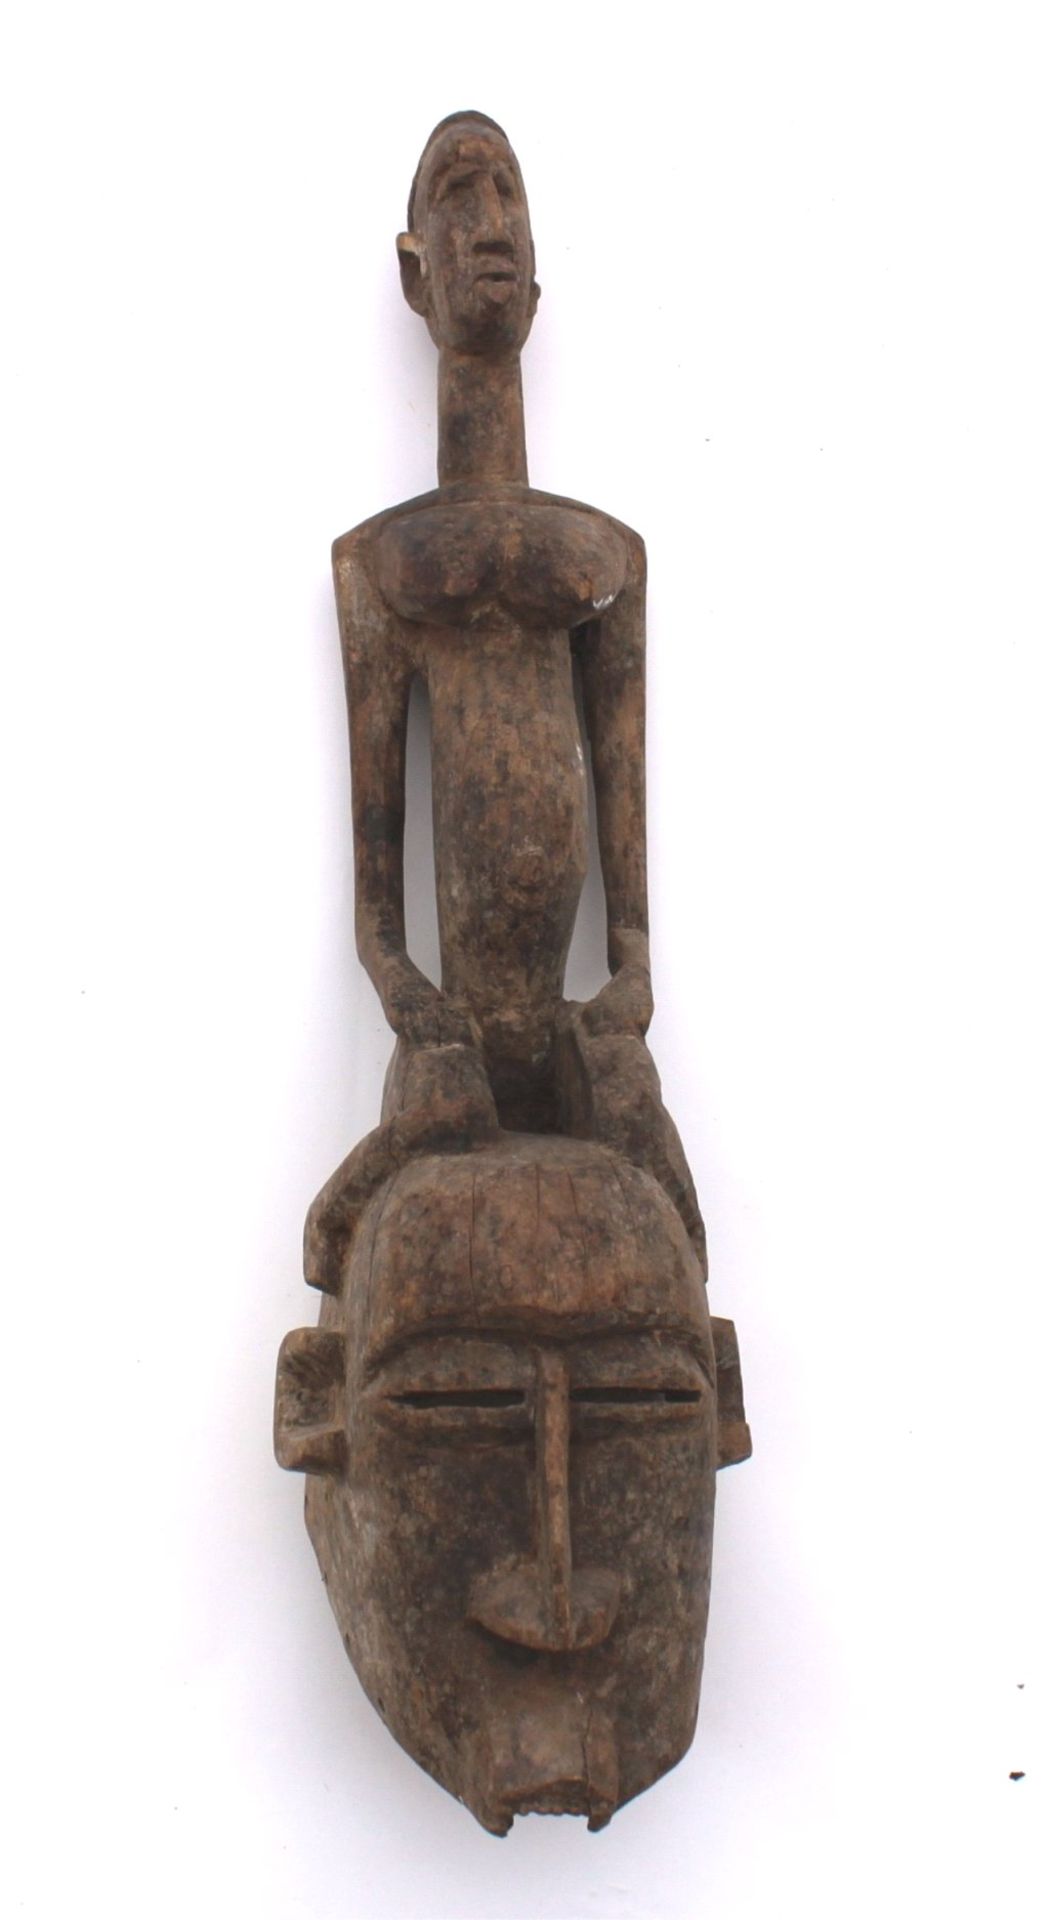 Afrikanische Ritual/Tanzmaske, Dogon 1. Hälfte 20. Jh.,Holz, dunkel patiniert, Randbohrungen,